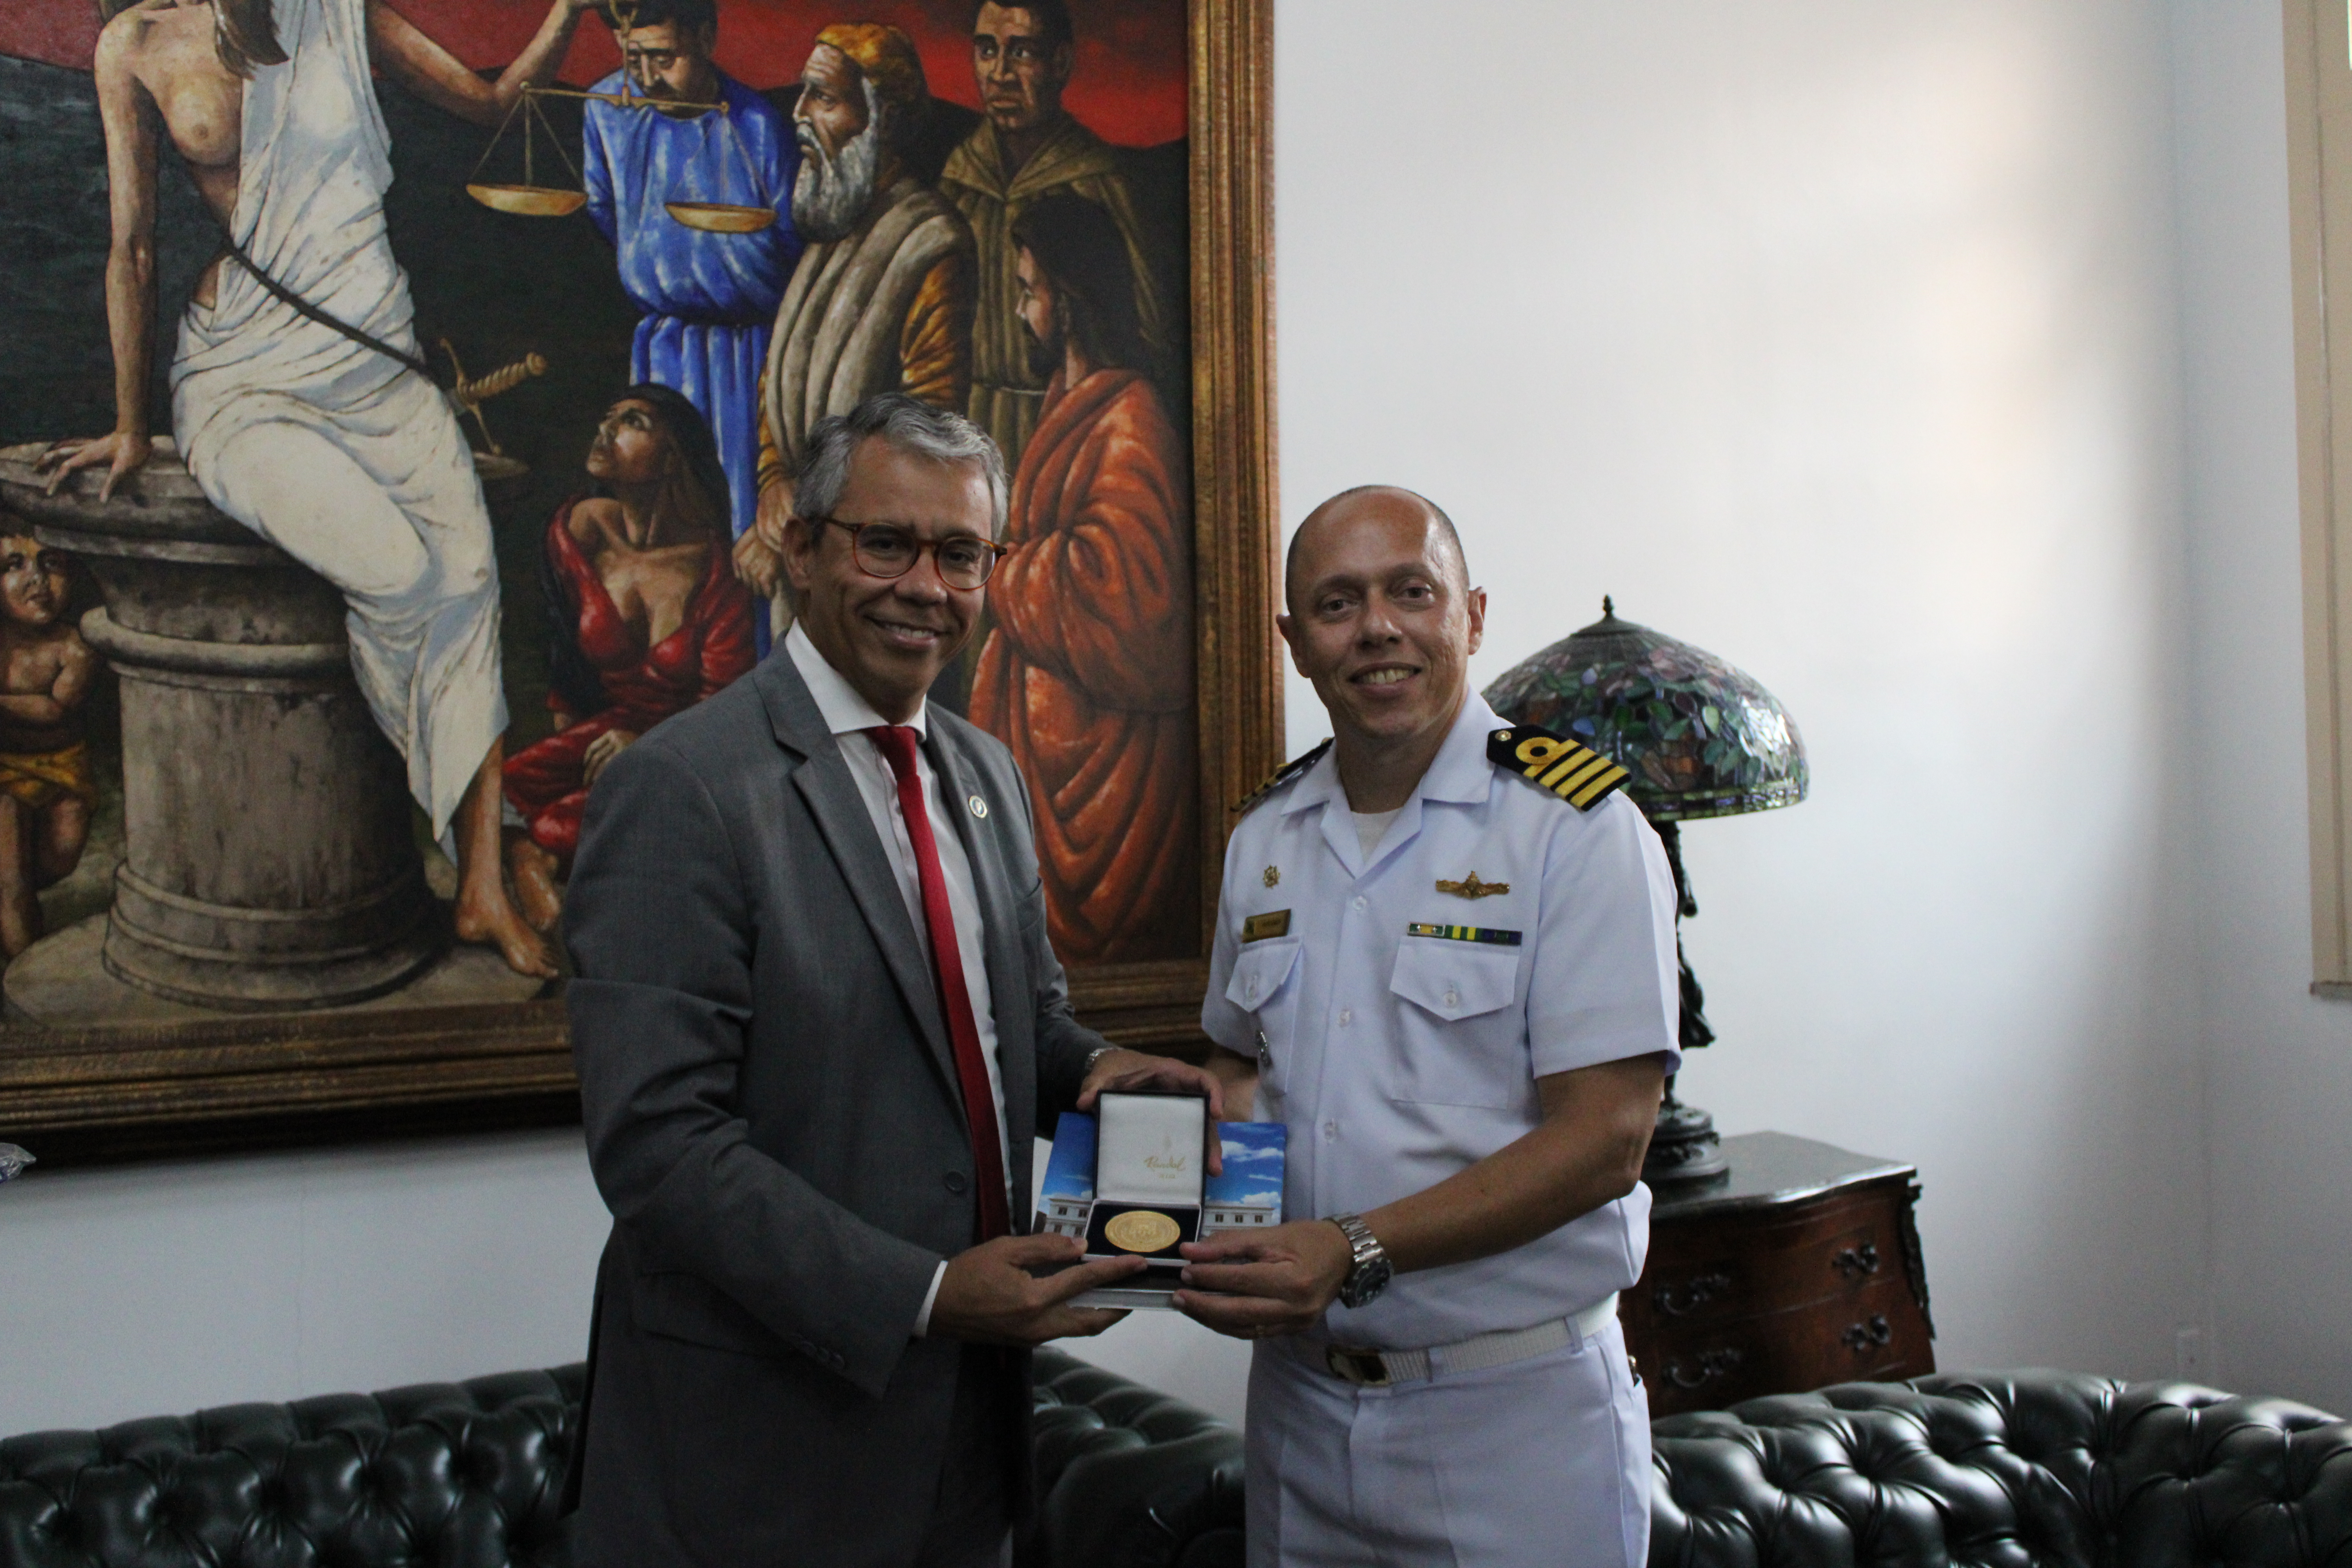 O Capitão dos Portos de farda recebendo livro e medalha do TJMA das mãos do presidente do TJMA, desembargador Paulo Velten. Os dois em pé e sorrindo